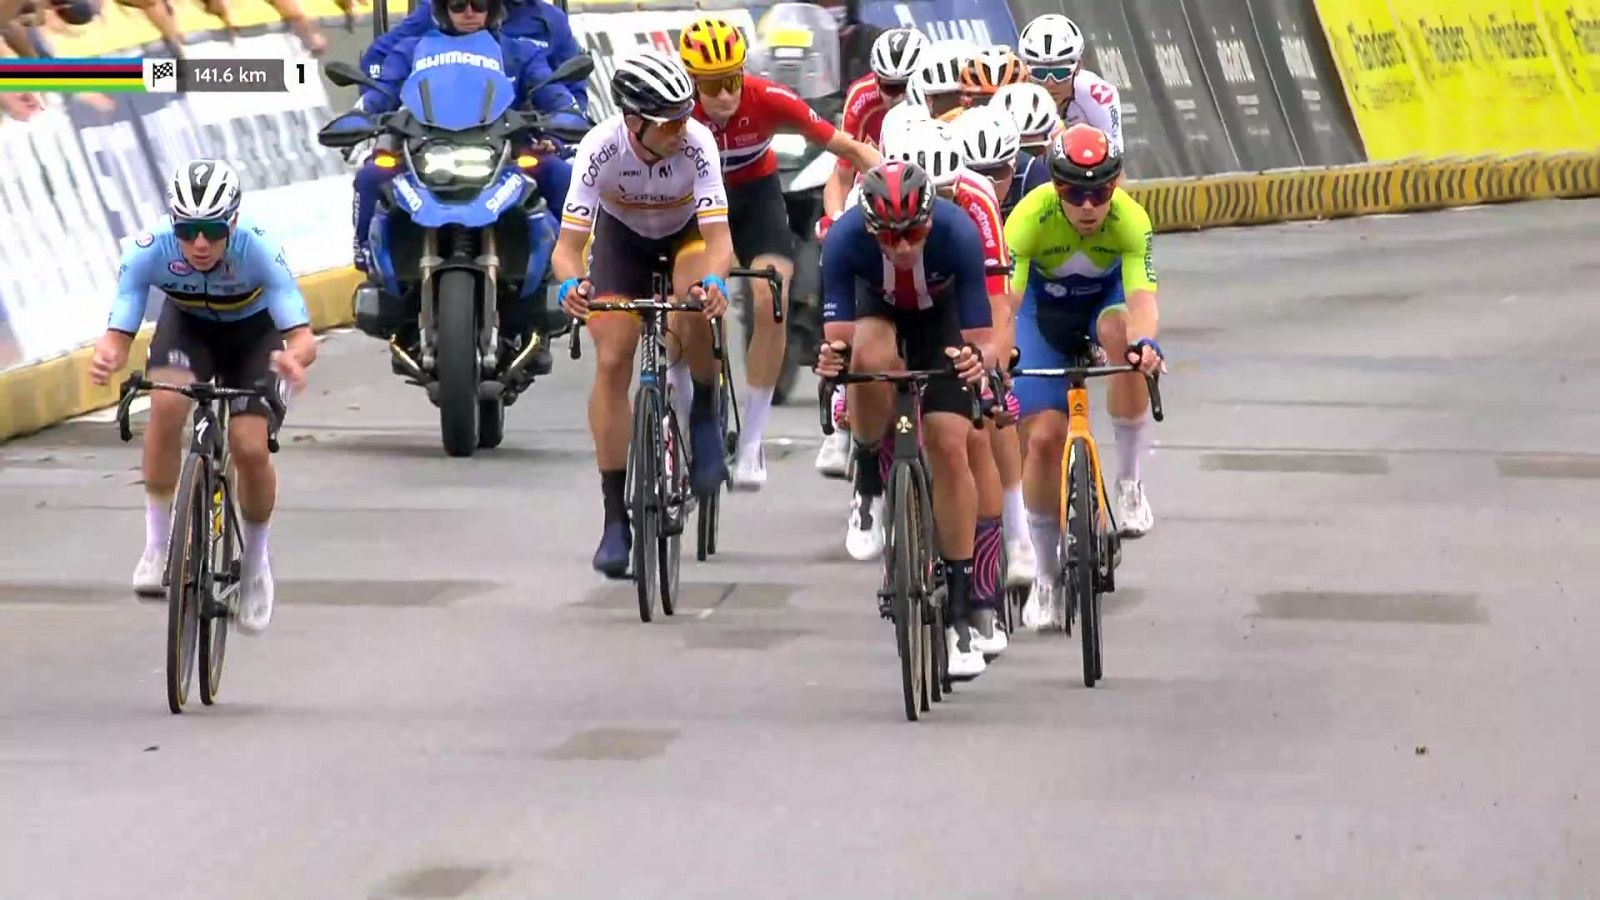 Ciclismo - Campeonato del Mundo Ciclismo en ruta. Prueba élite masculina (2)